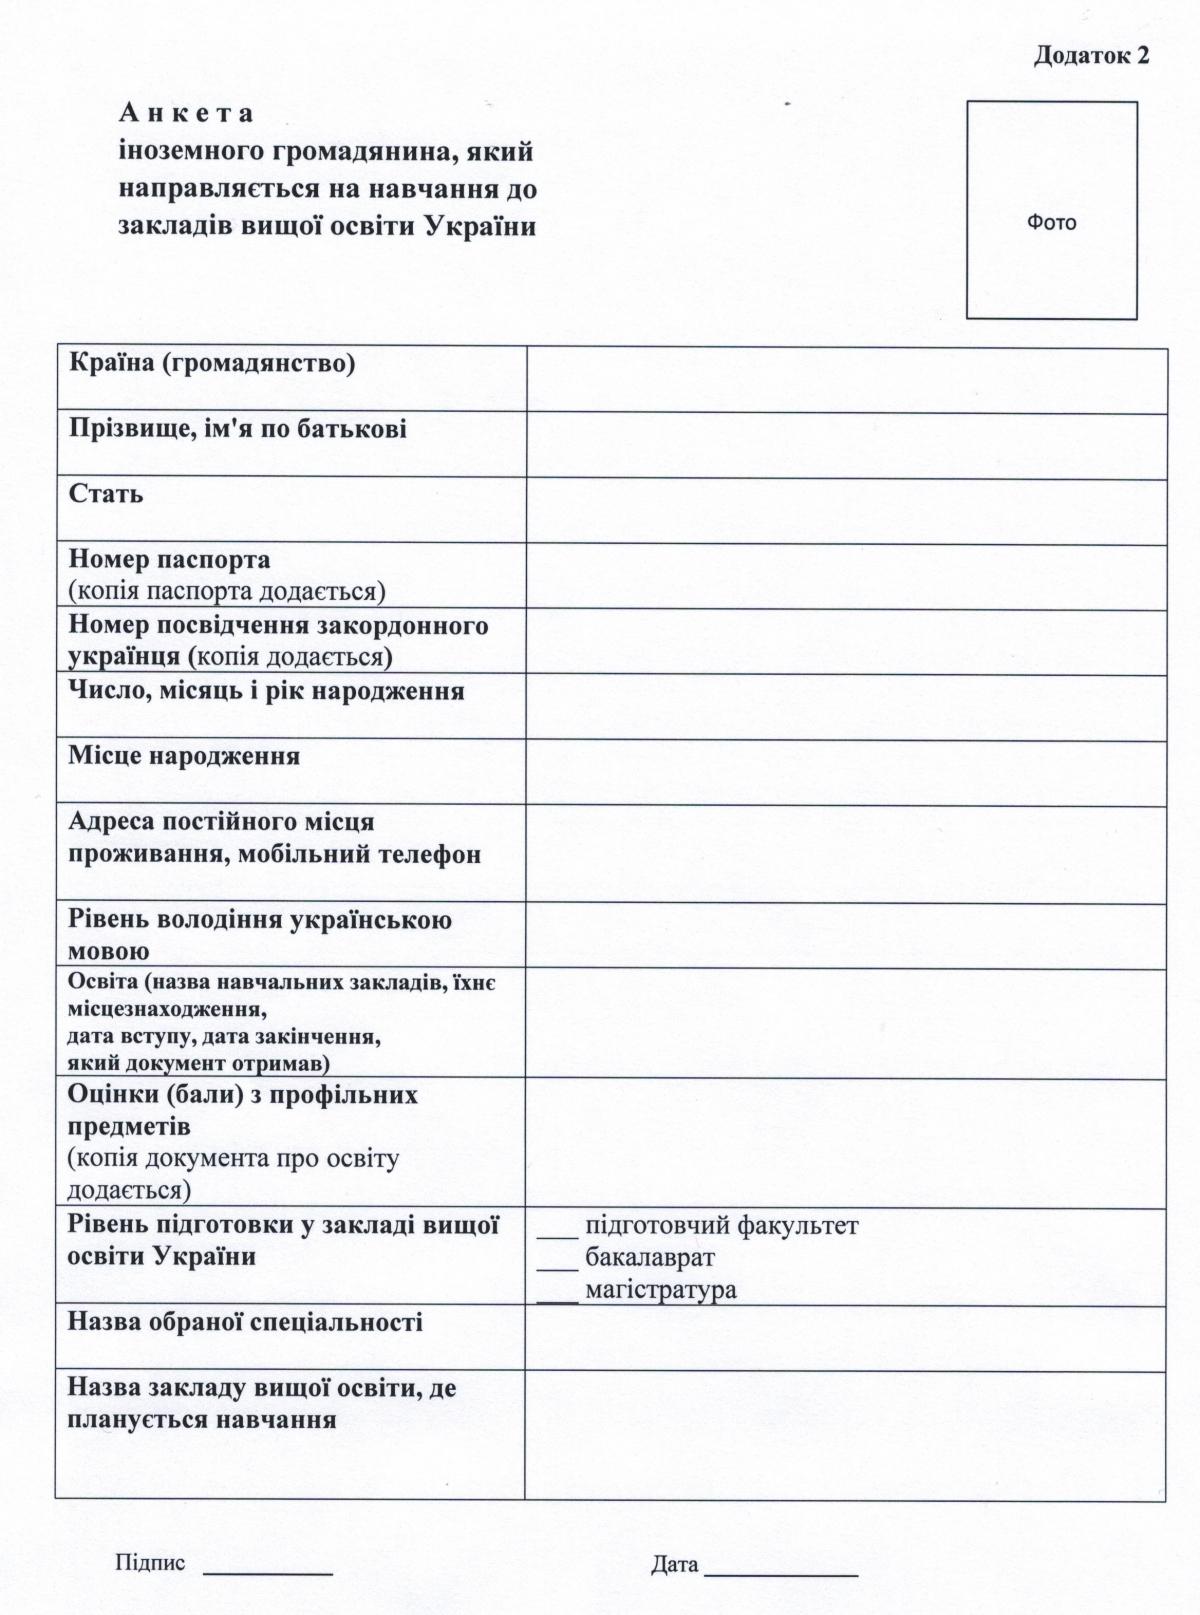 Кандидати на навчання з посвідченням закордонного українця подають до Департаменту міжнародного співробітництва МОН України пакет документів / фото mfa.gov.ua